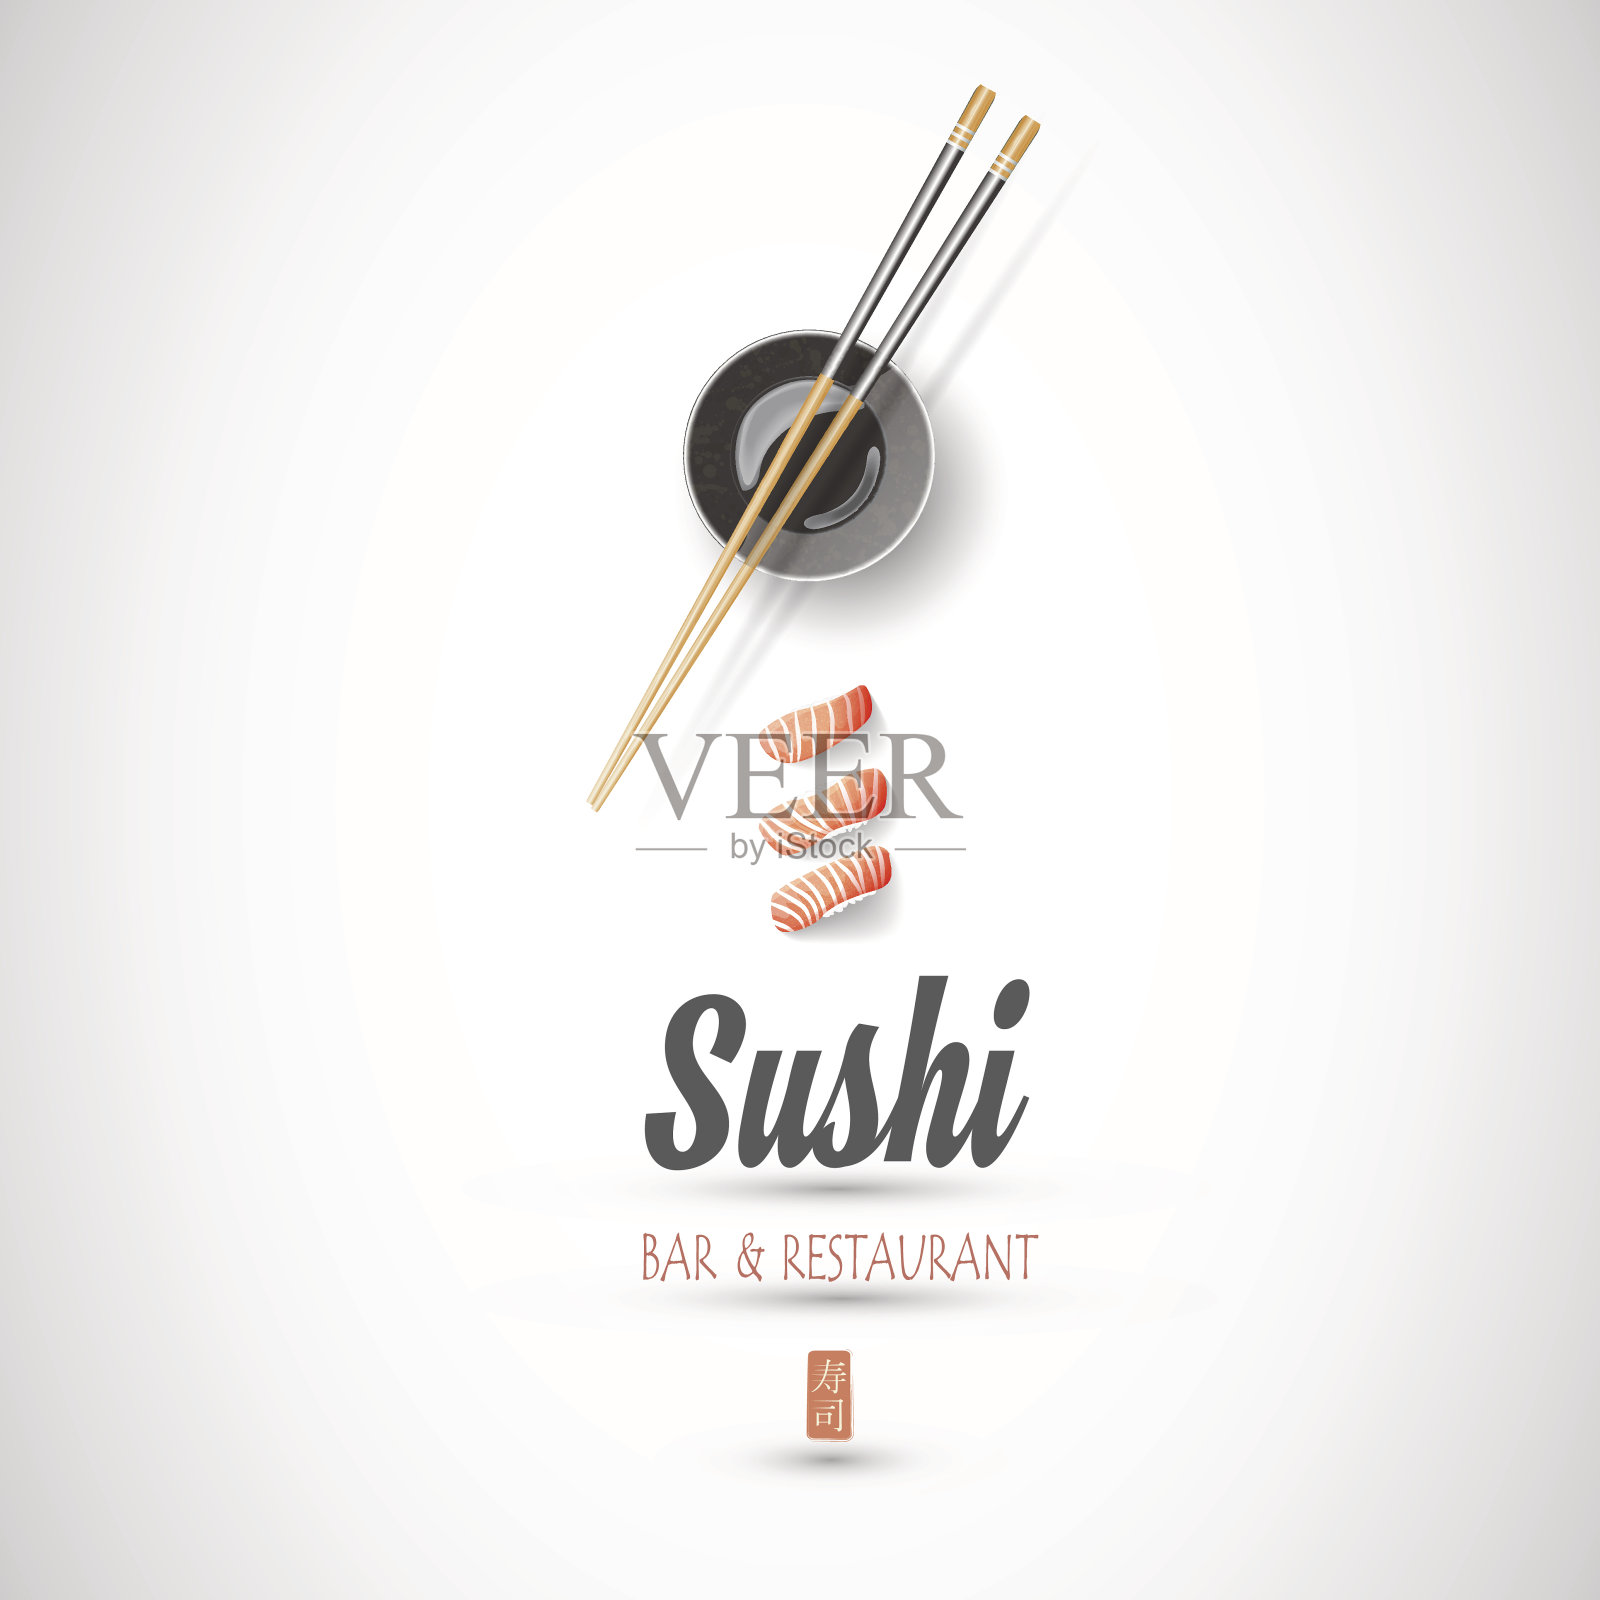 邀请寿司店的概念设计插画图片素材